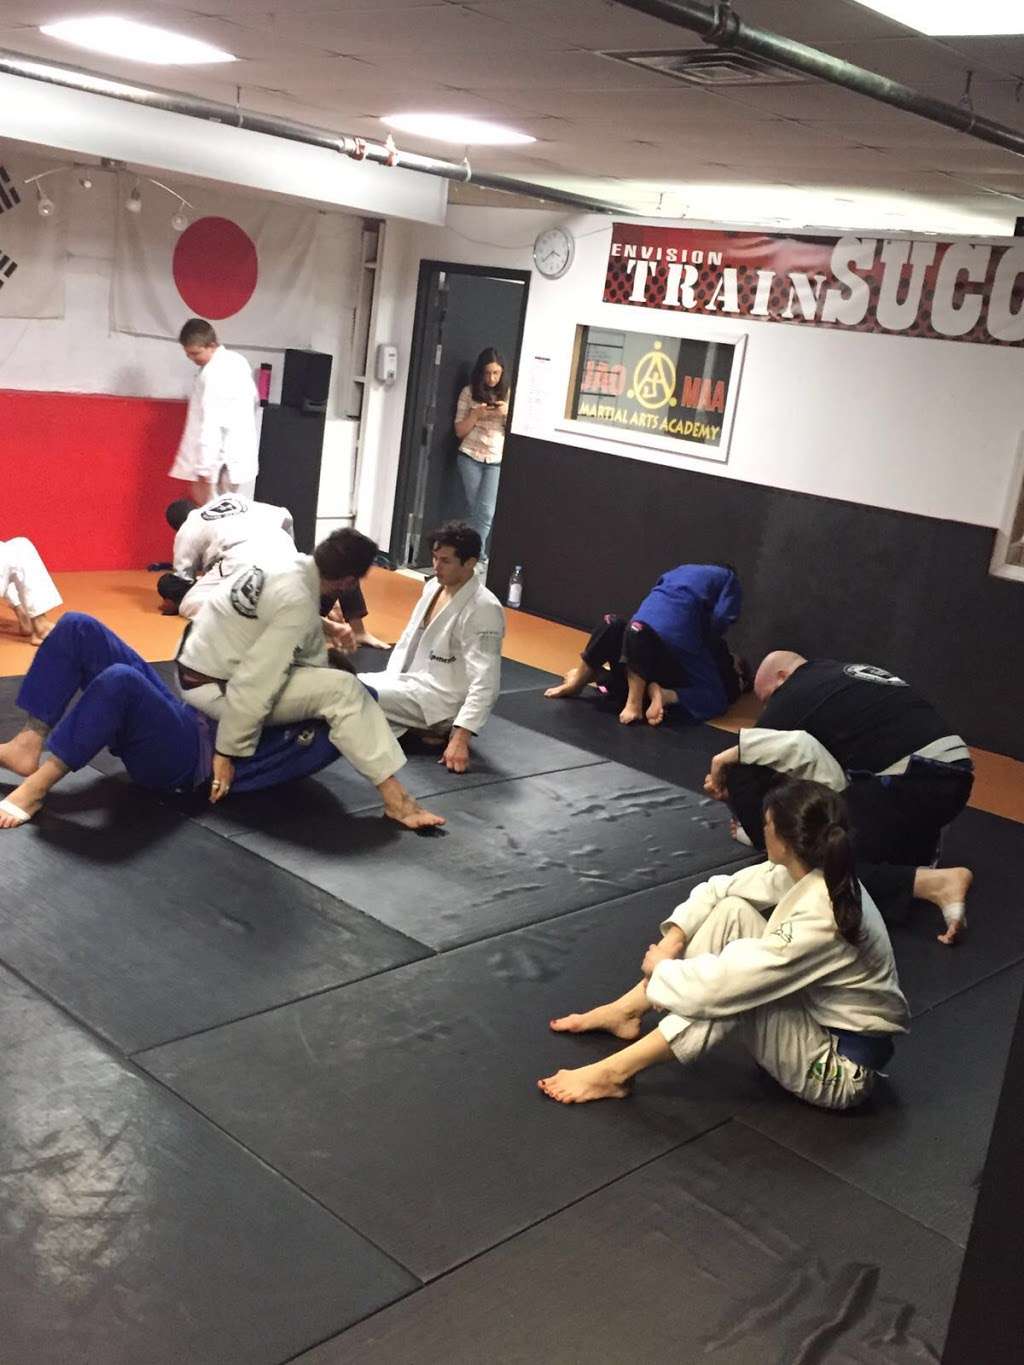 JAO Martial Arts Academy/Caio Terra Brazilian Jiu Jitsu NY | 609 Avenue X, Brooklyn, NY 11235, USA | Phone: (732) 526-2551